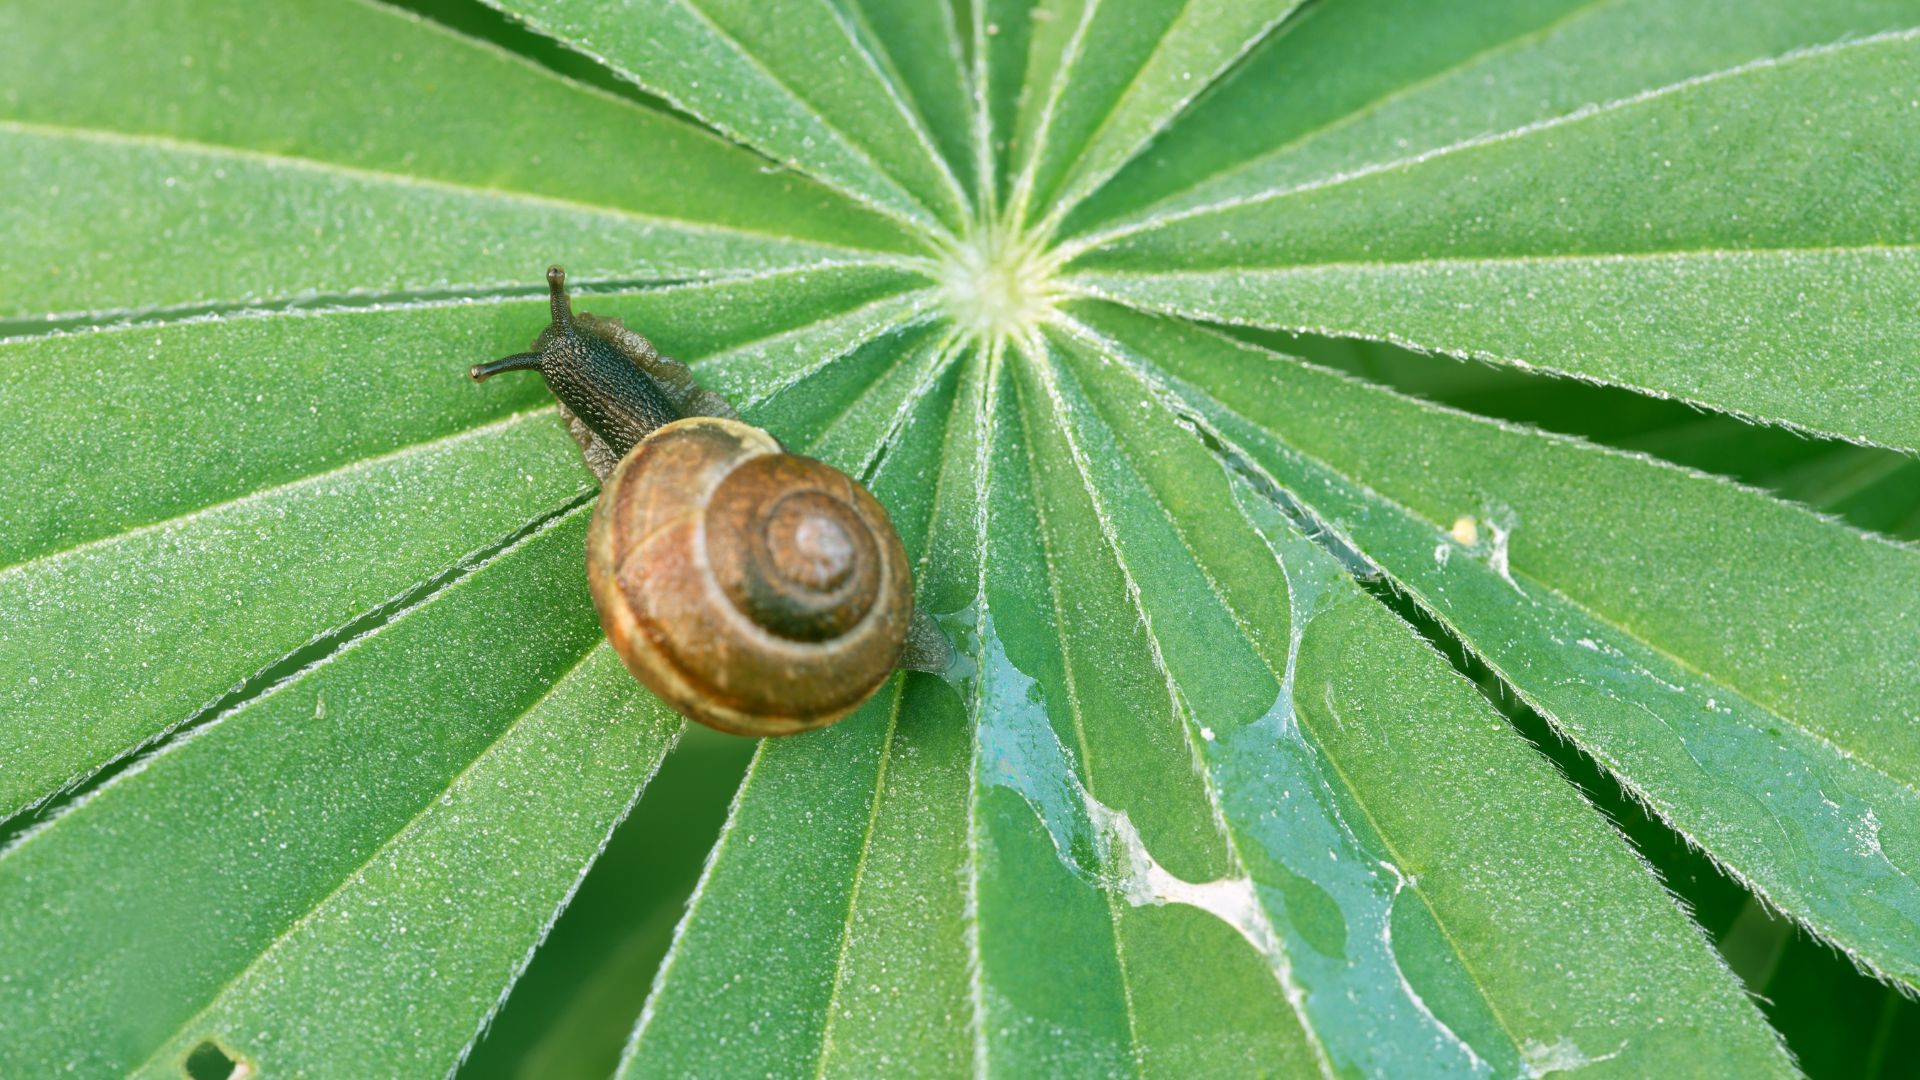 A snail trail on a green leaf